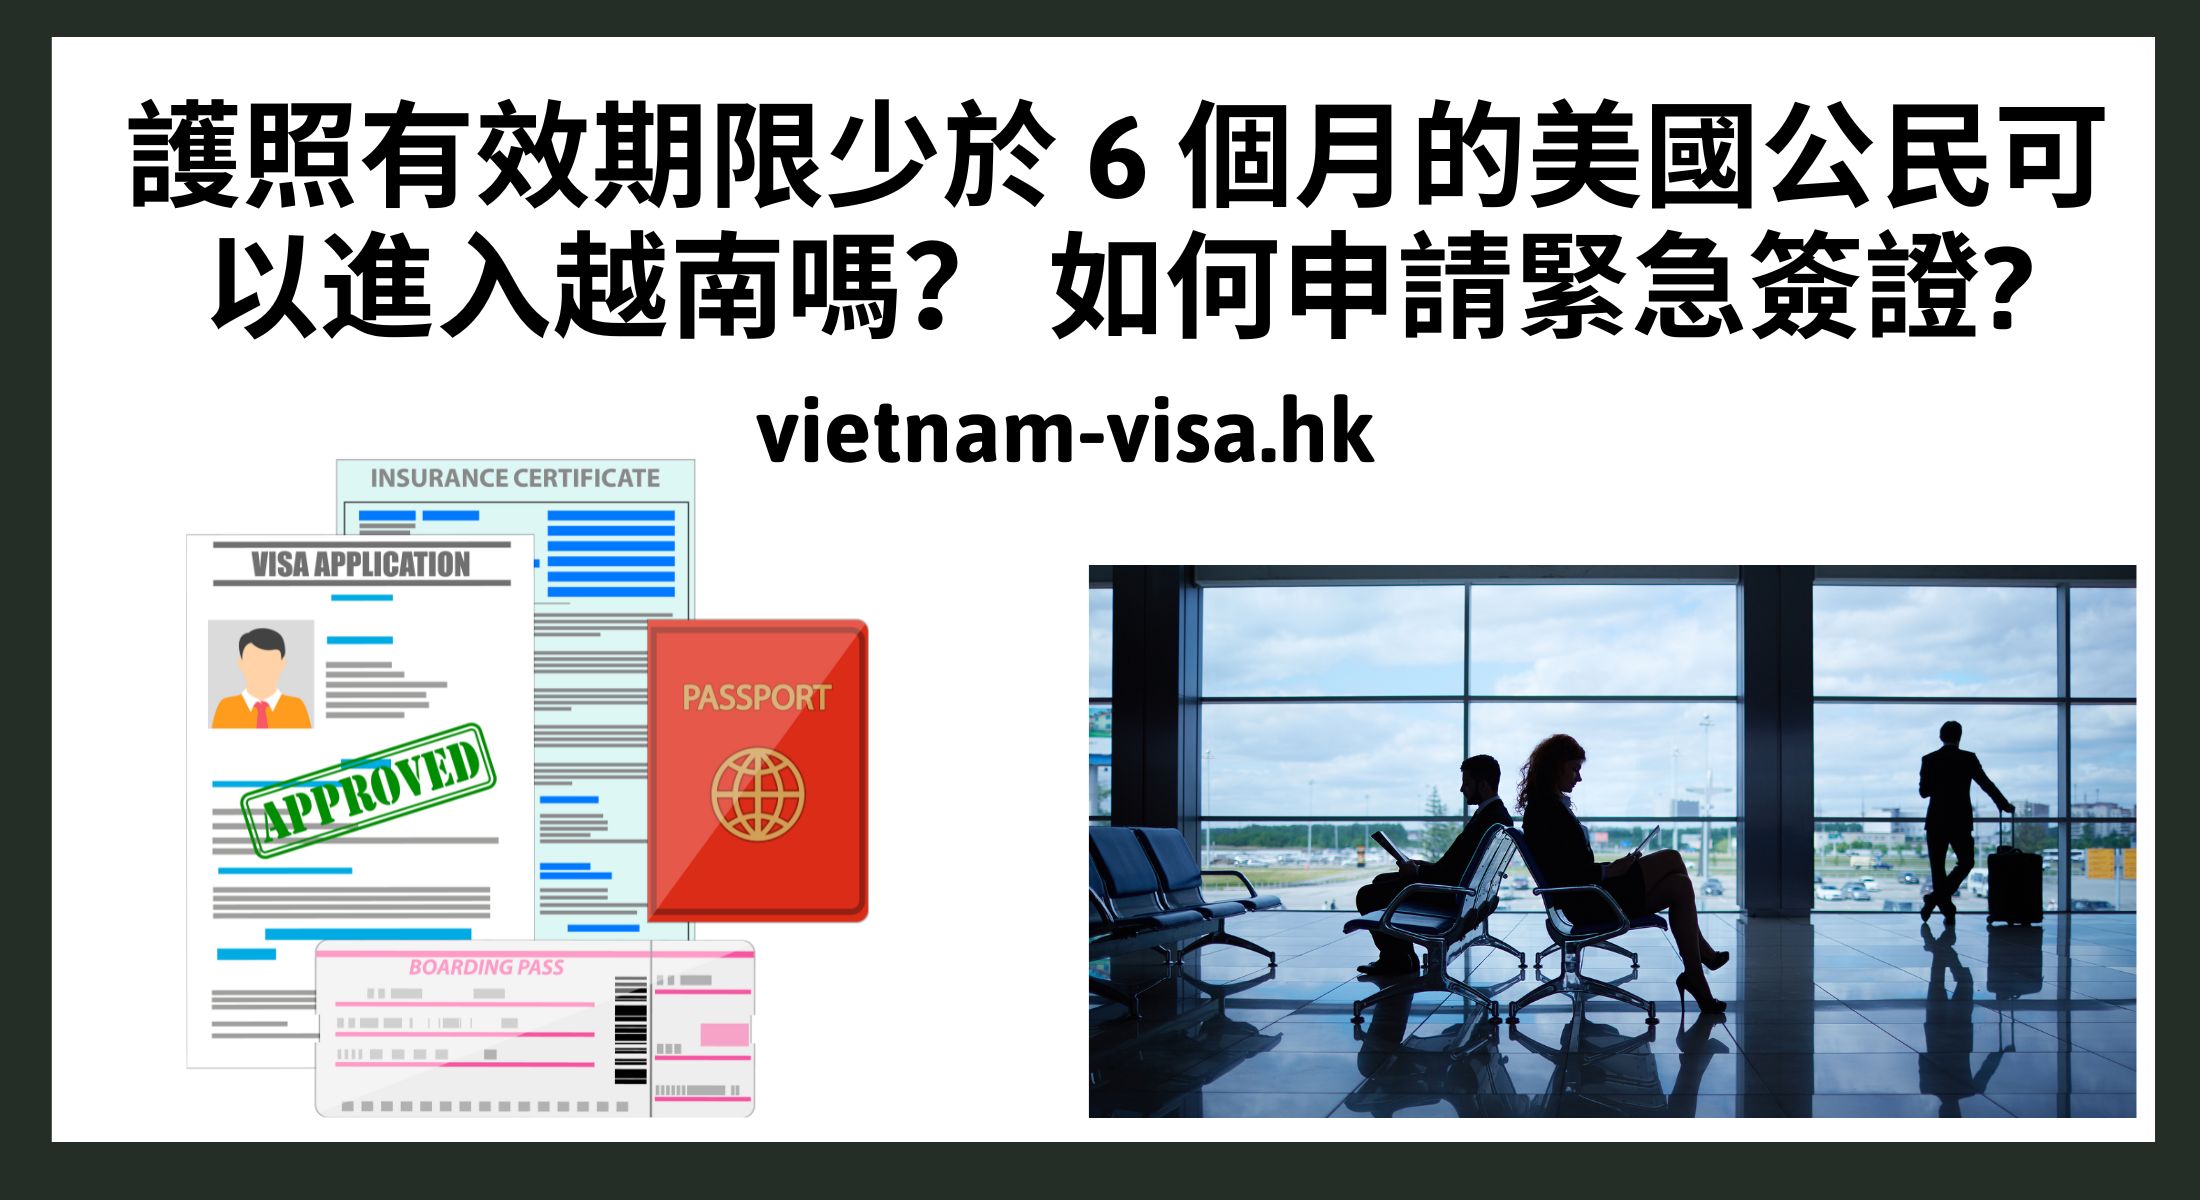 護照有效期限少於 6 個月的美國公民可以進入越南嗎？ 如何申請緊急簽證?